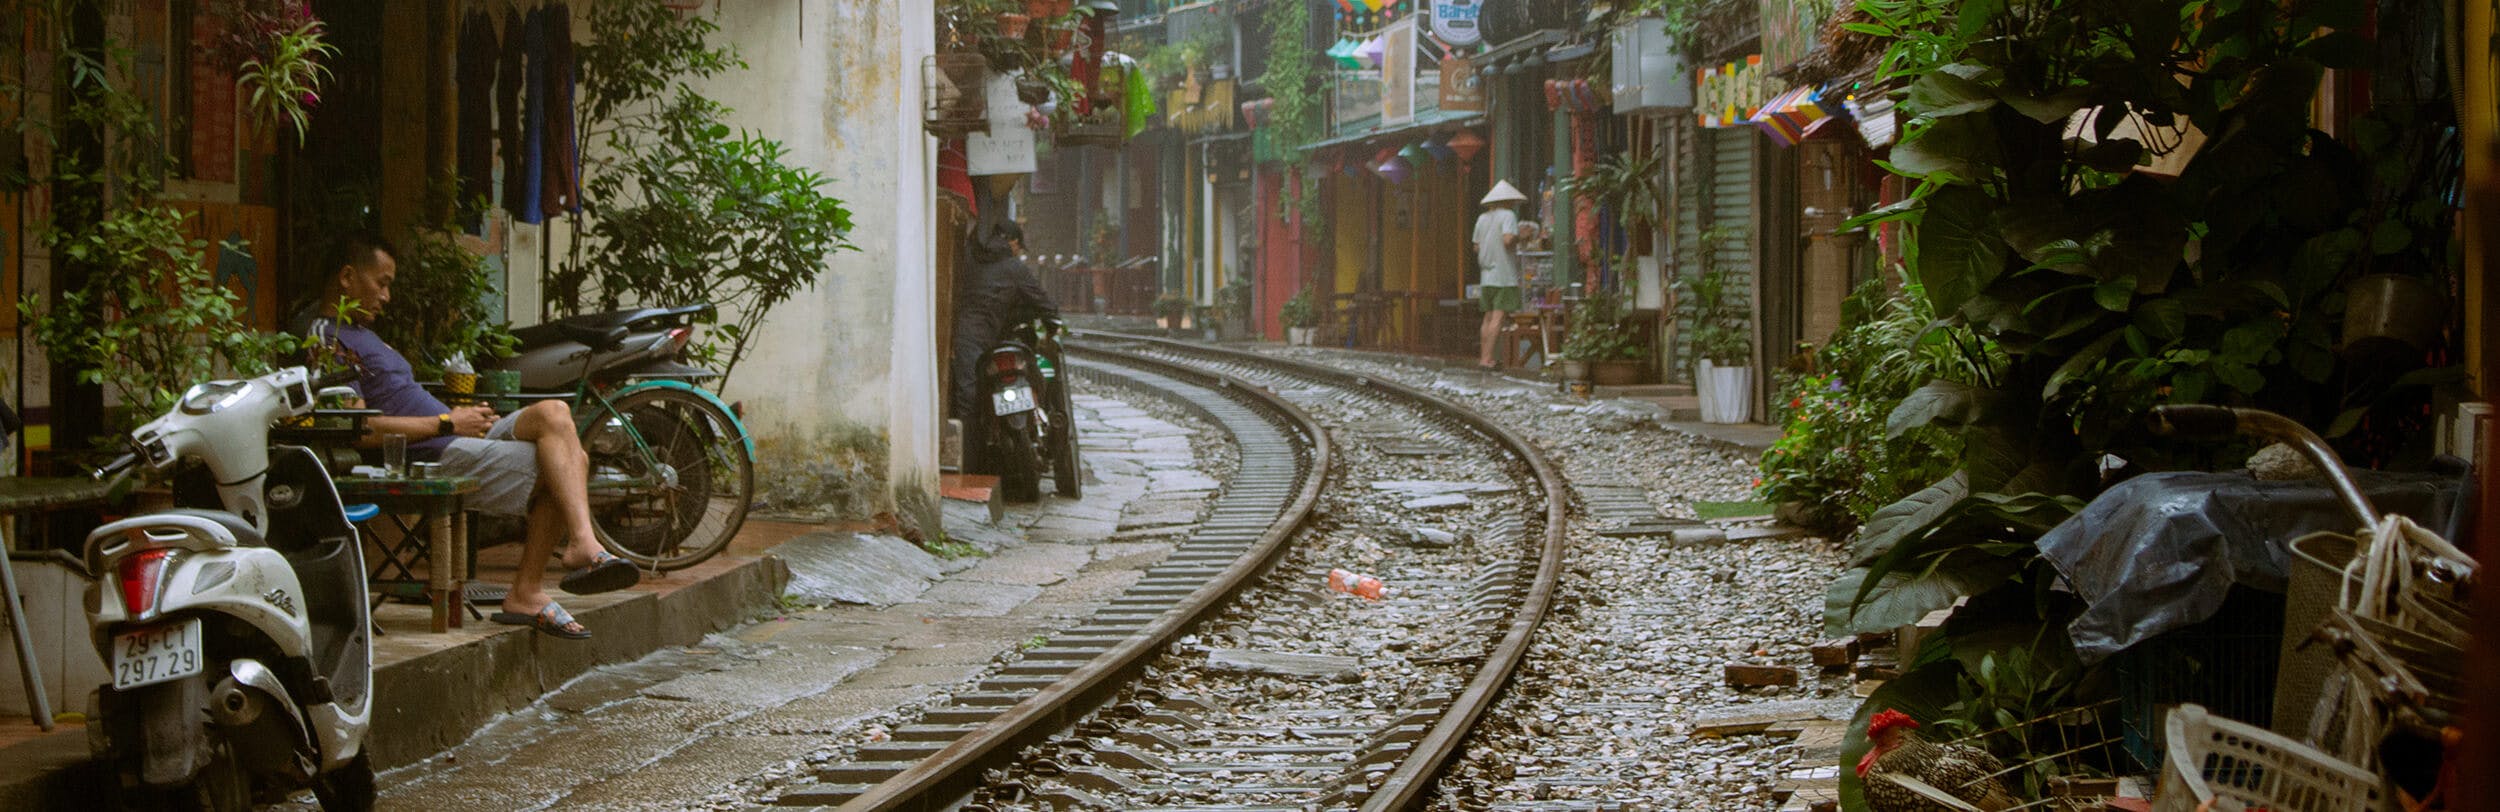 Scena di quotidianità  a Train Street, Hanoi (Vietnam). Cè una leggera poggia nell aria. Sulla sinistra si vede un uomo bere una bibita calda; poco più avanti un altra persona sta cercando di coprire il proprio scooter. Ci sono molte piante verdi